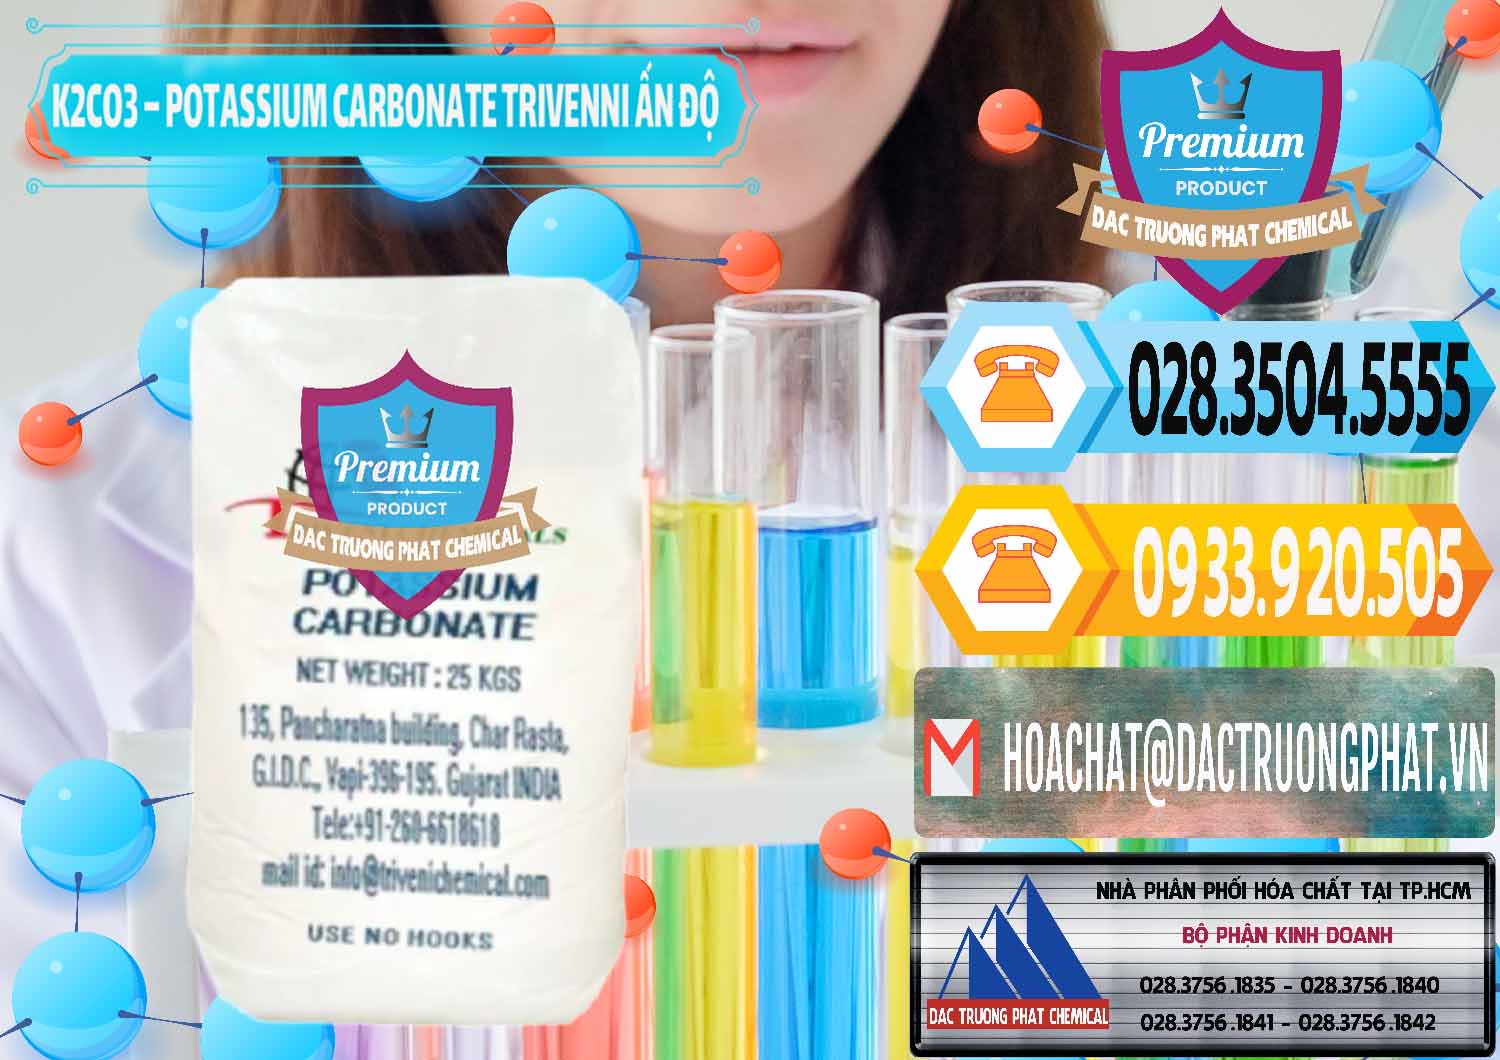 Công ty chuyên cung cấp ( bán ) K2Co3 – Potassium Carbonate Trivenni Ấn Độ India - 0473 - Nhà cung cấp - kinh doanh hóa chất tại TP.HCM - hoachattayrua.net